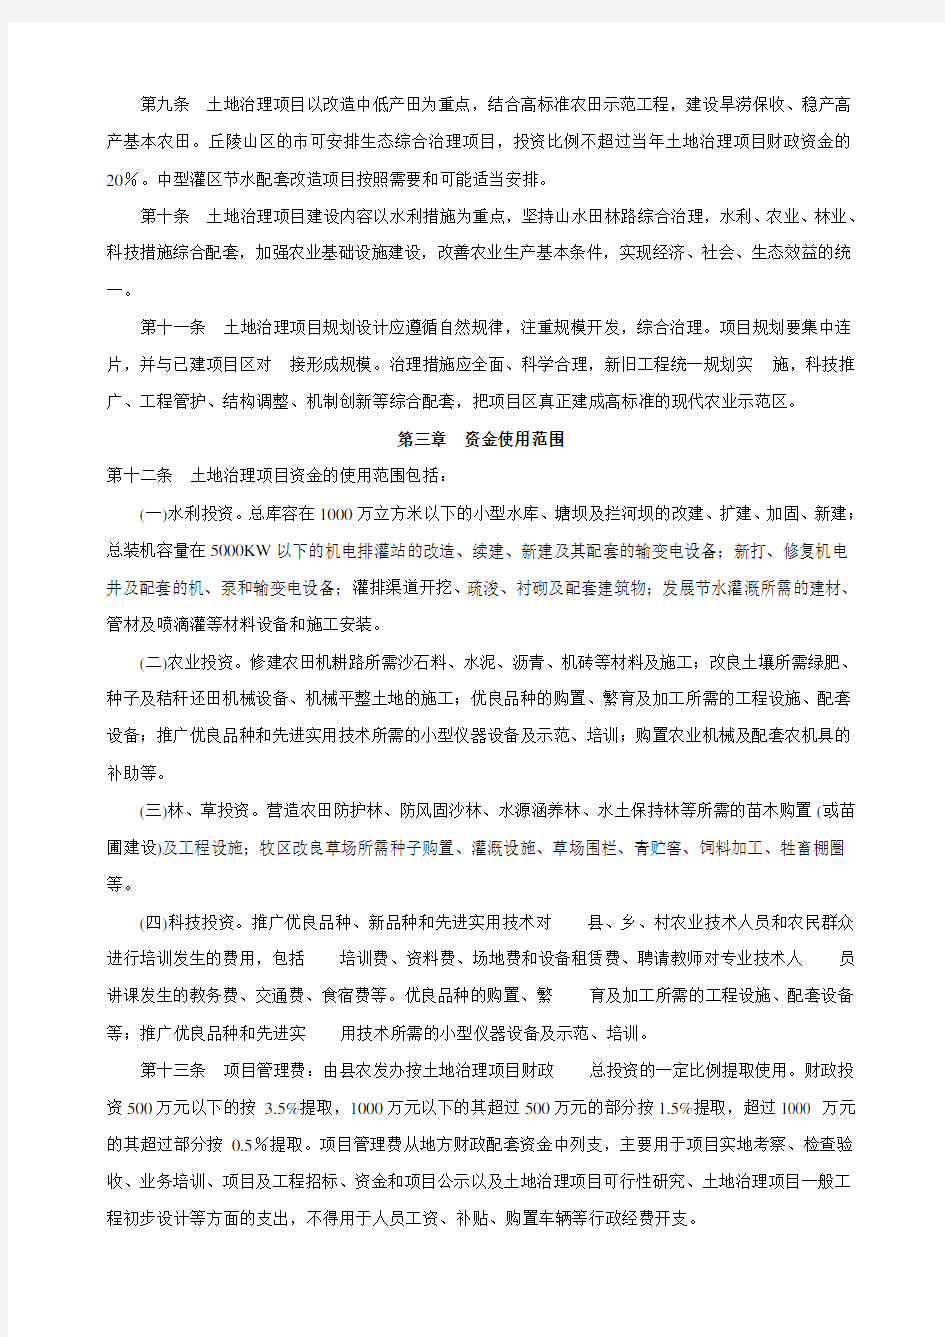 河北省农业综合开发土地治理项目管理办法(试行)